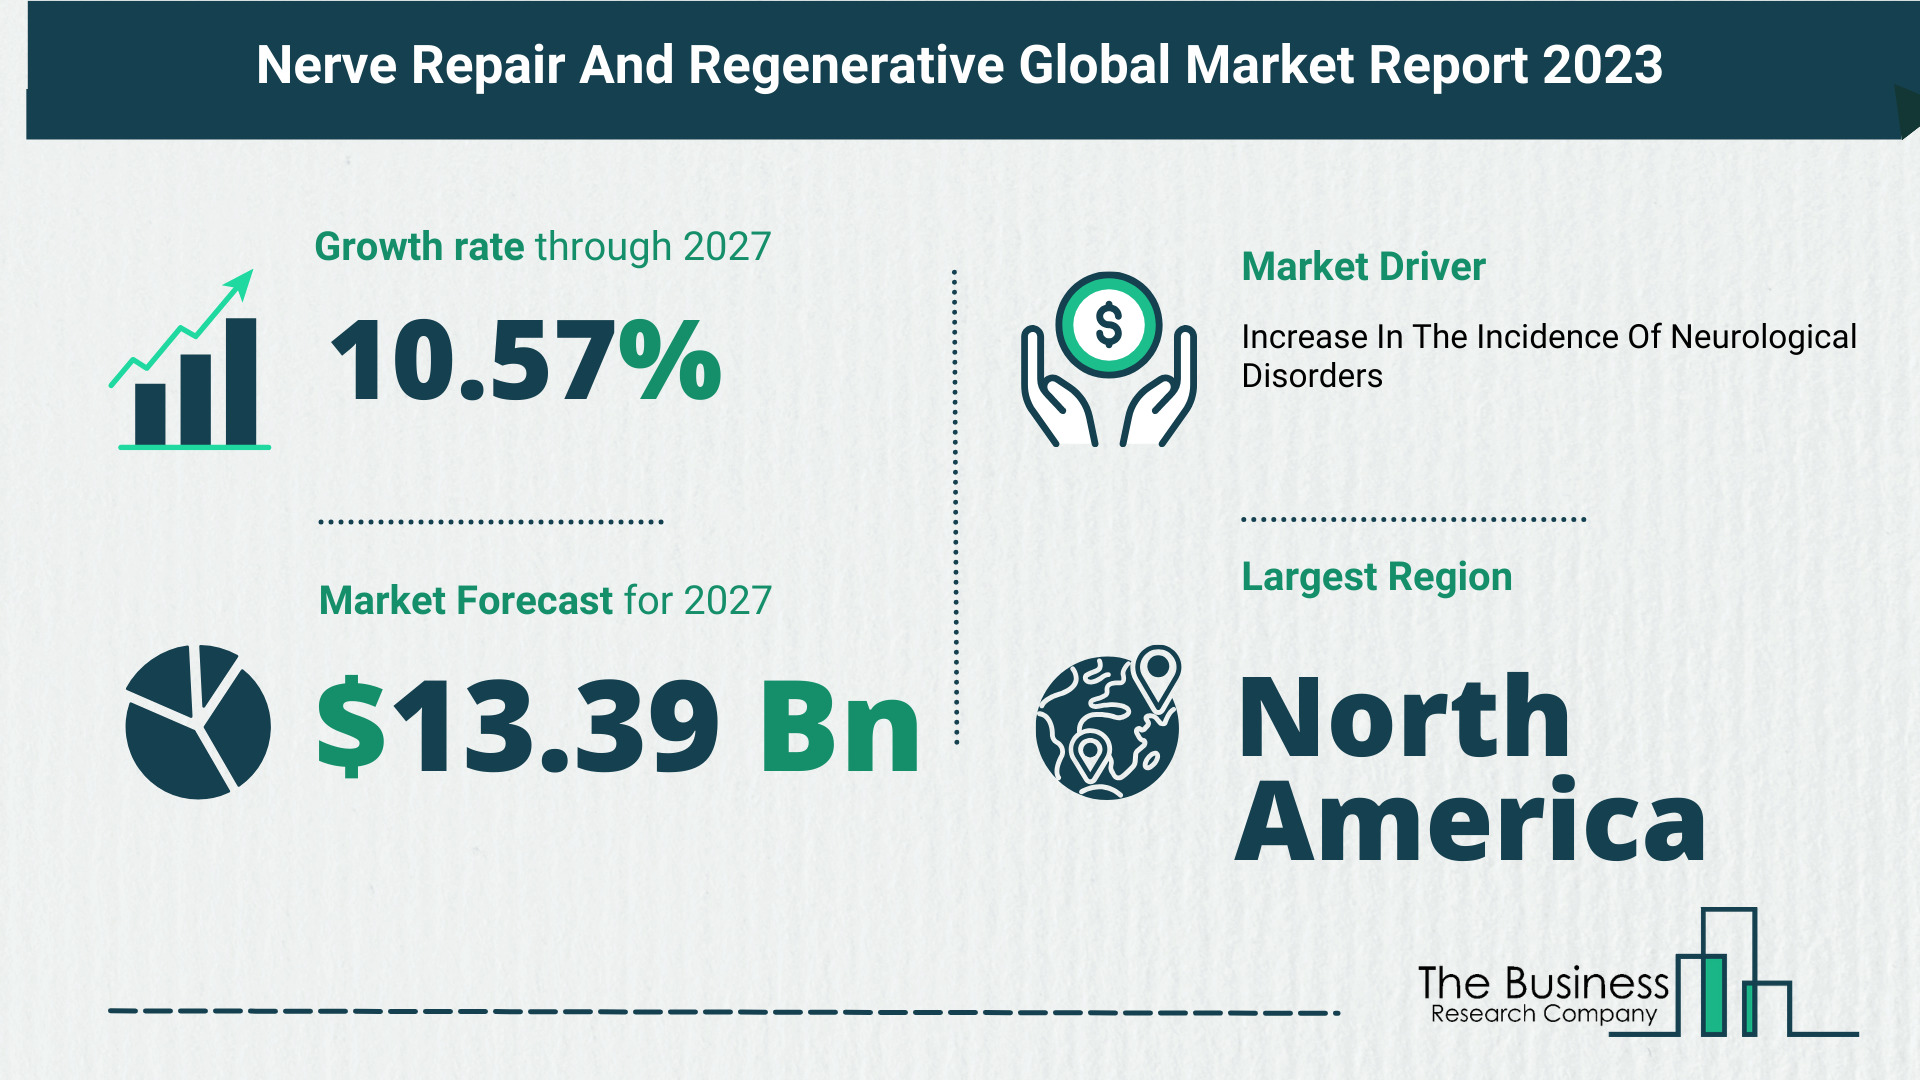 Global Nerve Repair And Regenerative Market